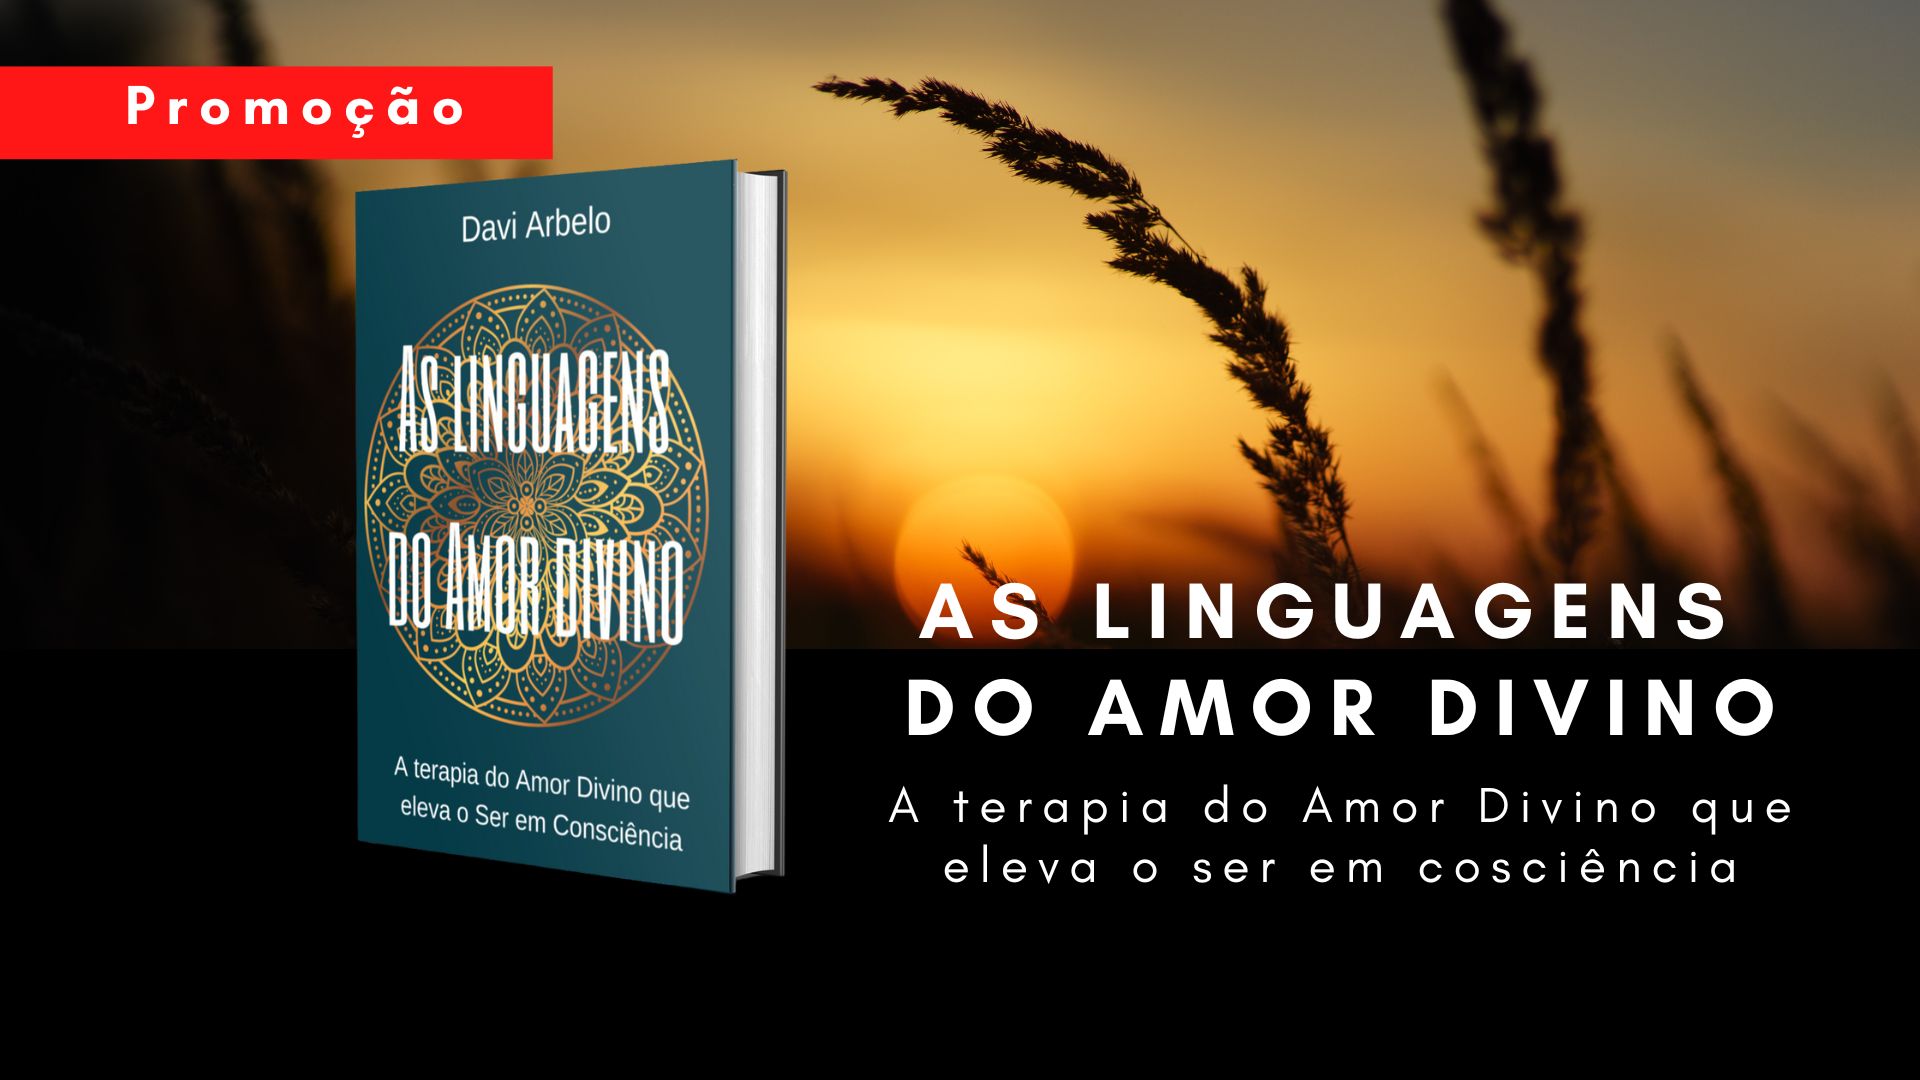 Imagem - Portifólio, as linguagens do Amor Divino